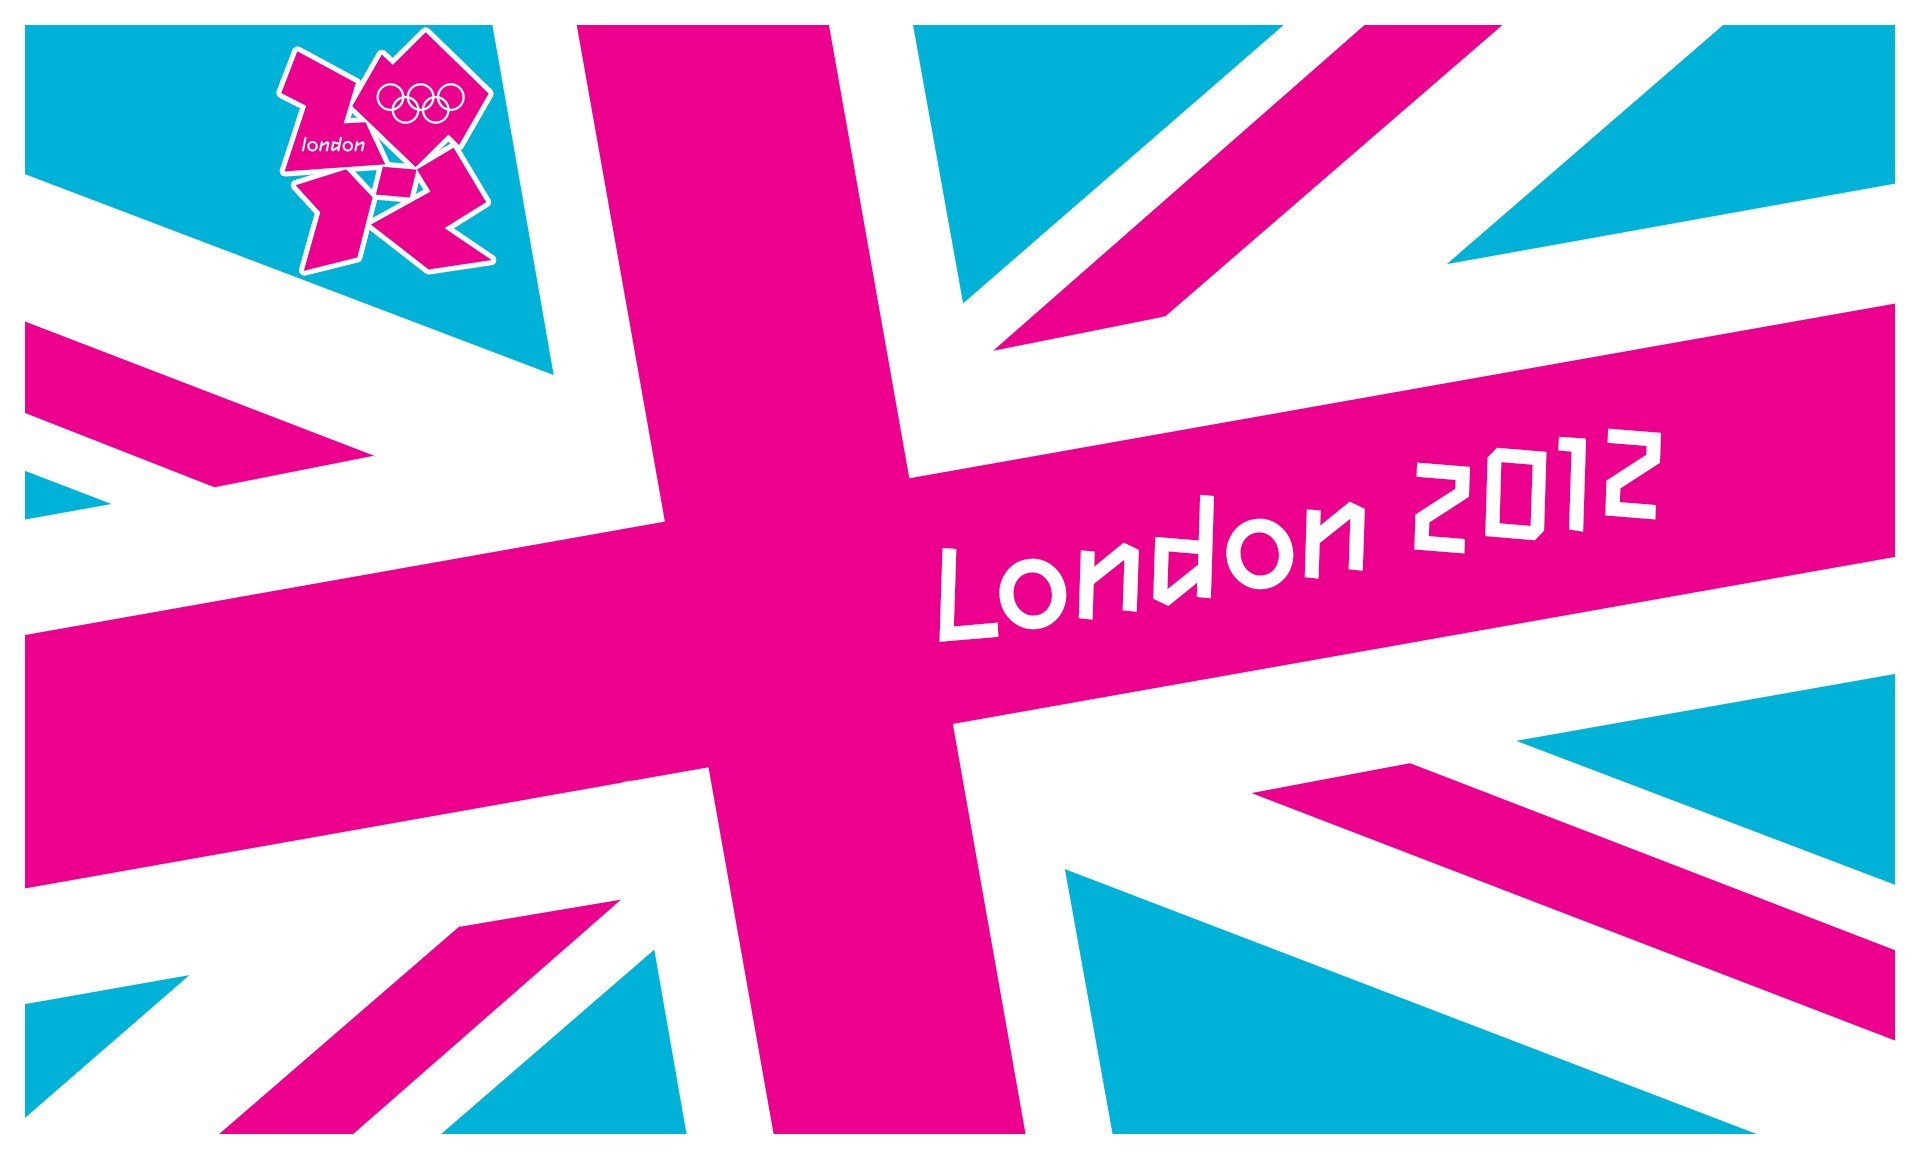 General 1920x1159 flag Olympic Games London digital art 2012 (Year) sport